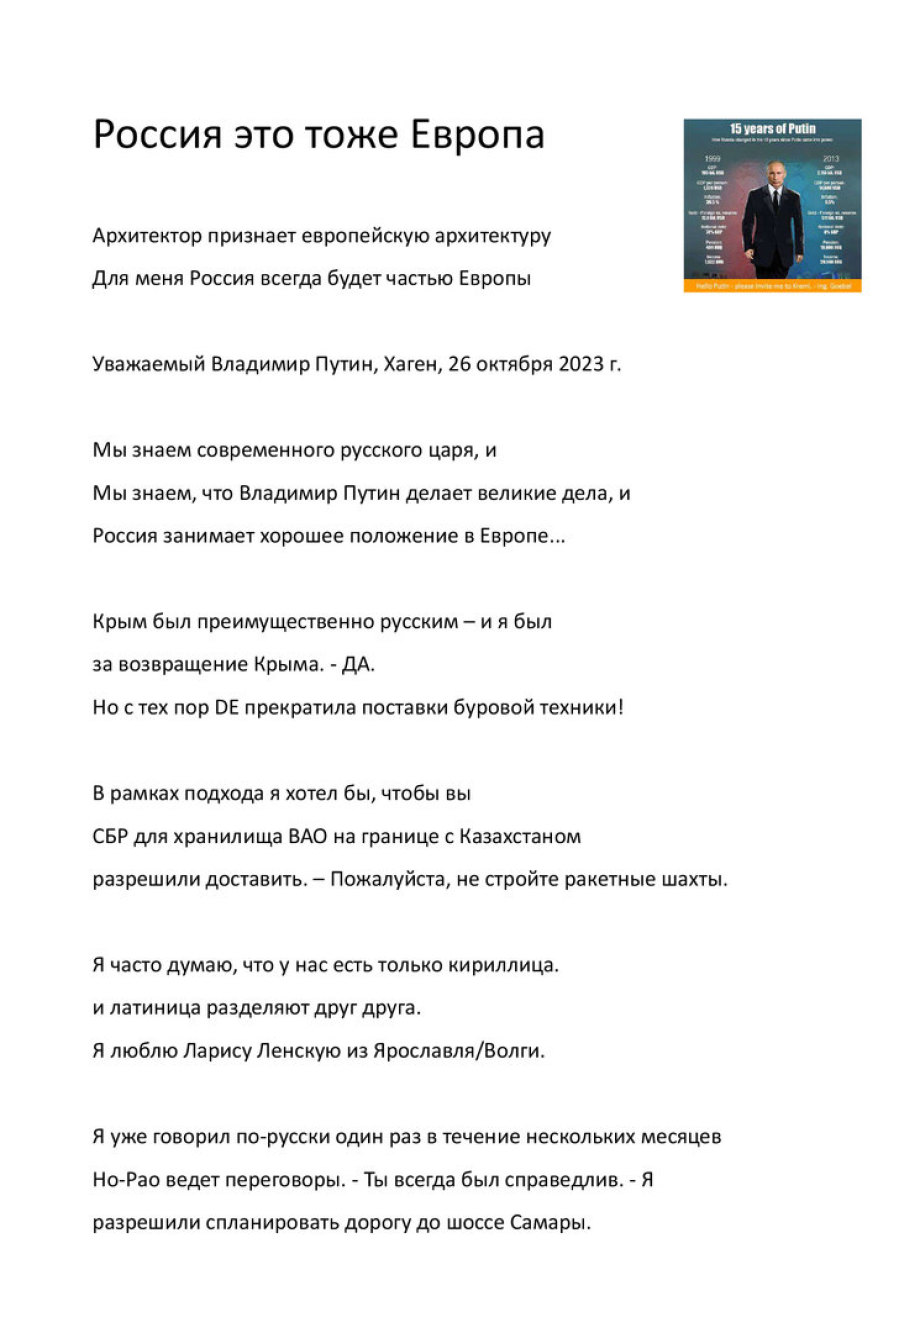 Brief an Valdimir Putin - Bitte um einen Besuch in Russland